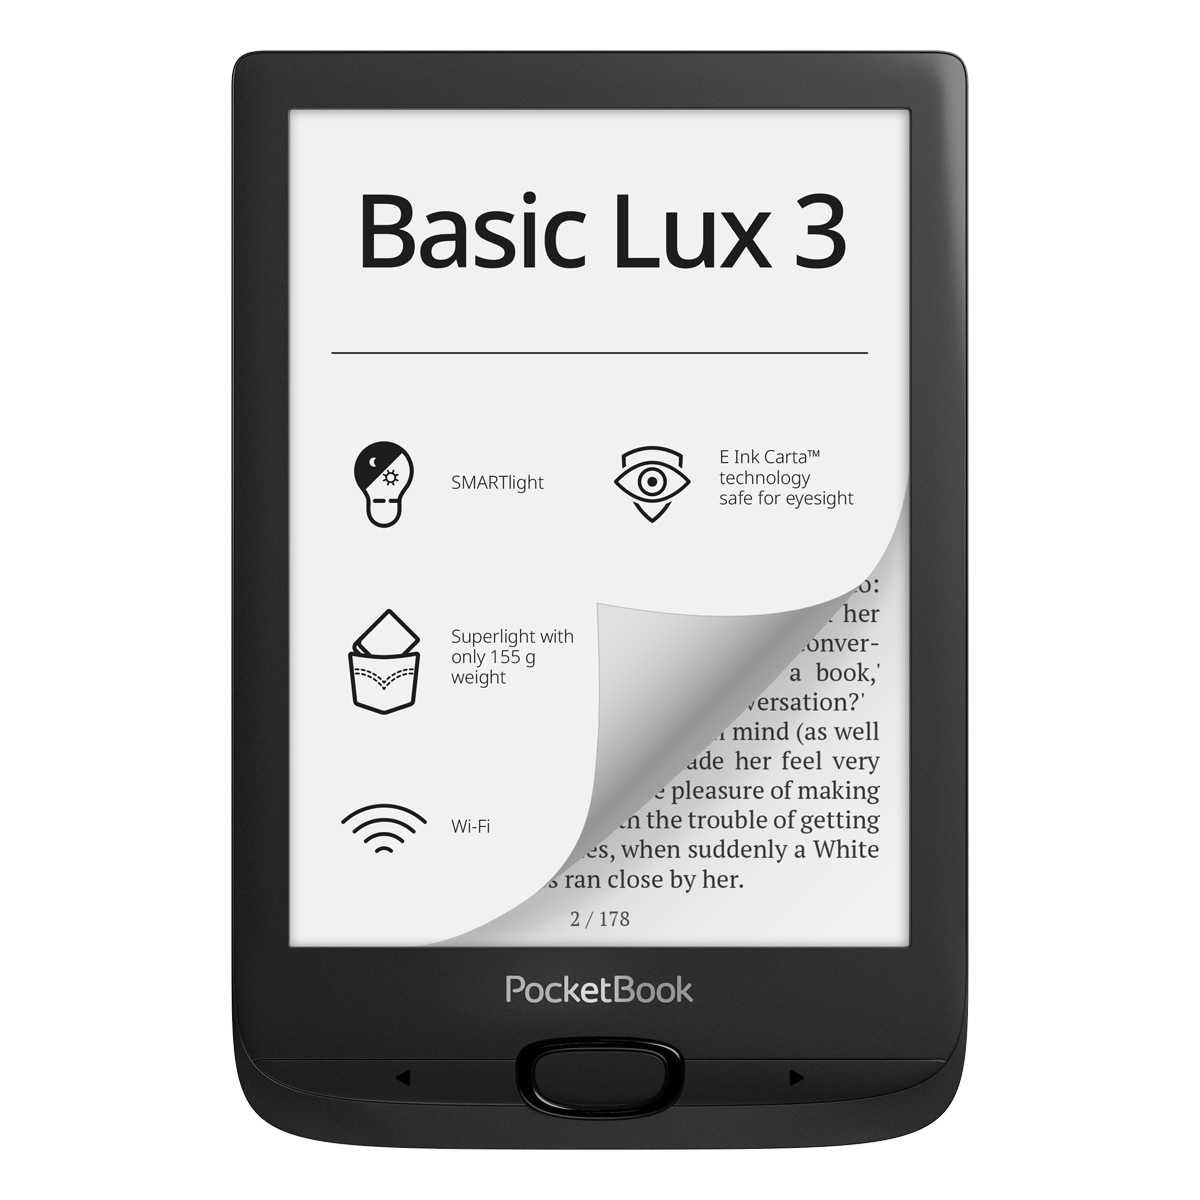 Czytnik ebooków PocketBook Basic Lux 3 (617) w kolorze czarnym